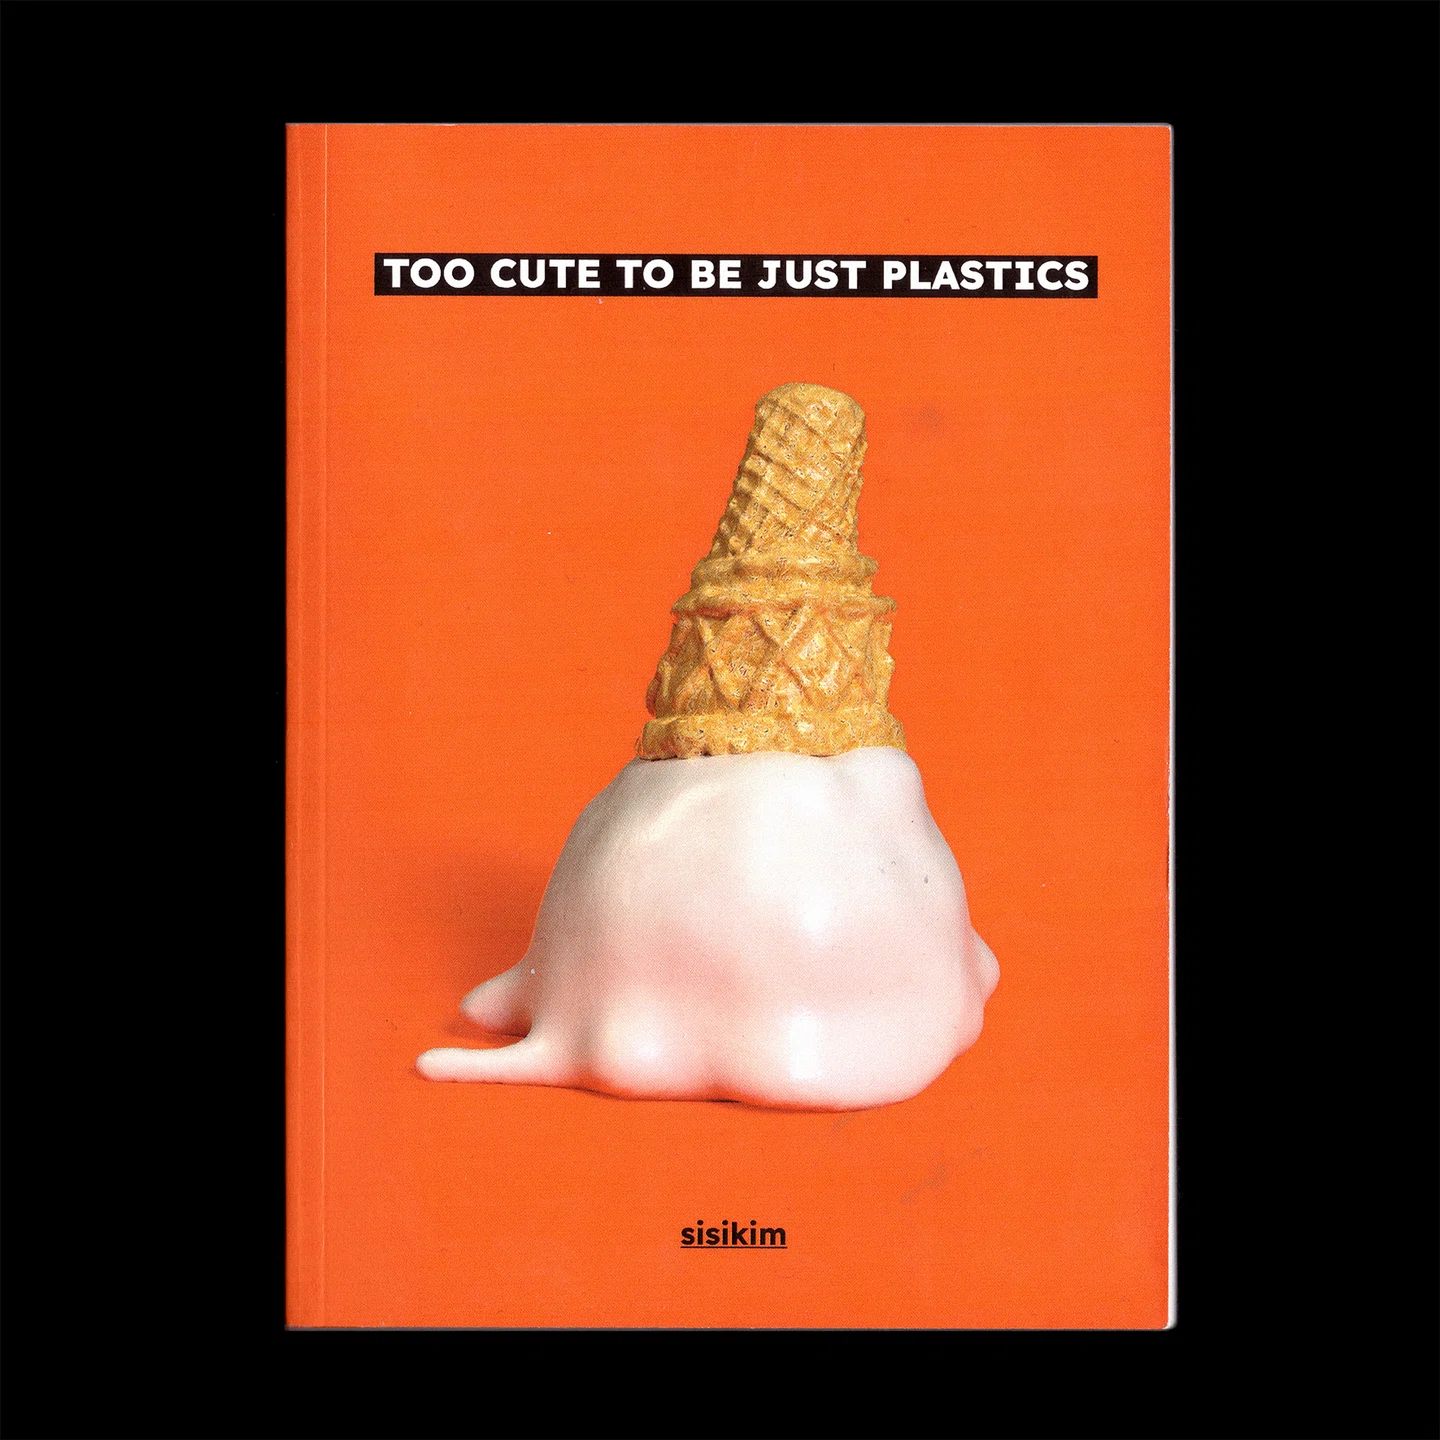 A vida em plástico é fantástica: as divertidas ilustrações 3D de Sisi Kim estão longe de serem descartáveis